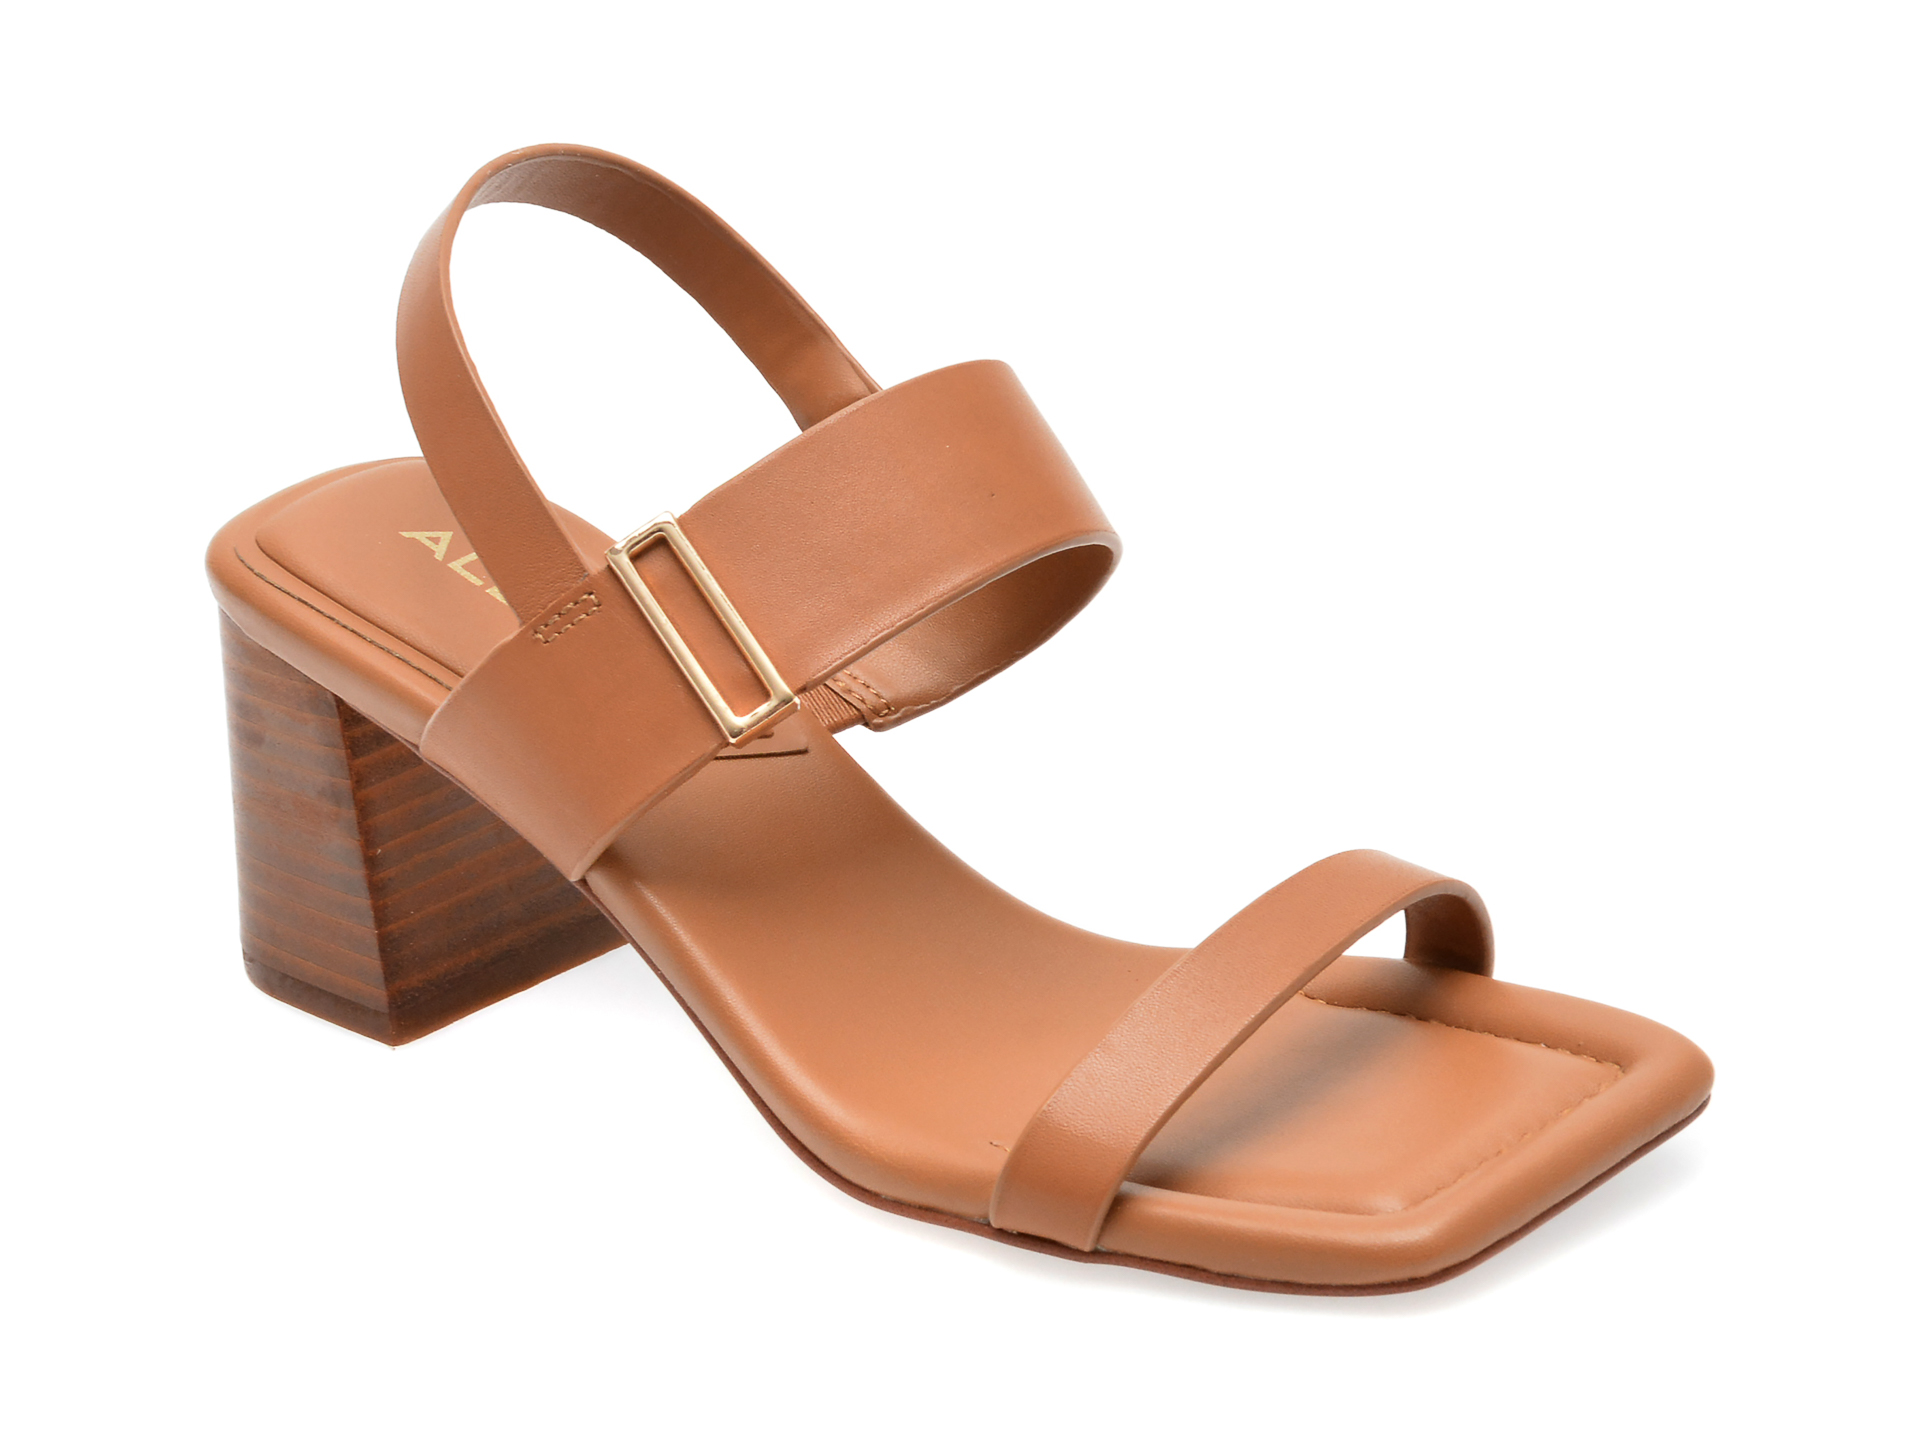 Sandale ALDO nude, FIDLES259, din piele naturala femei 2023-09-23